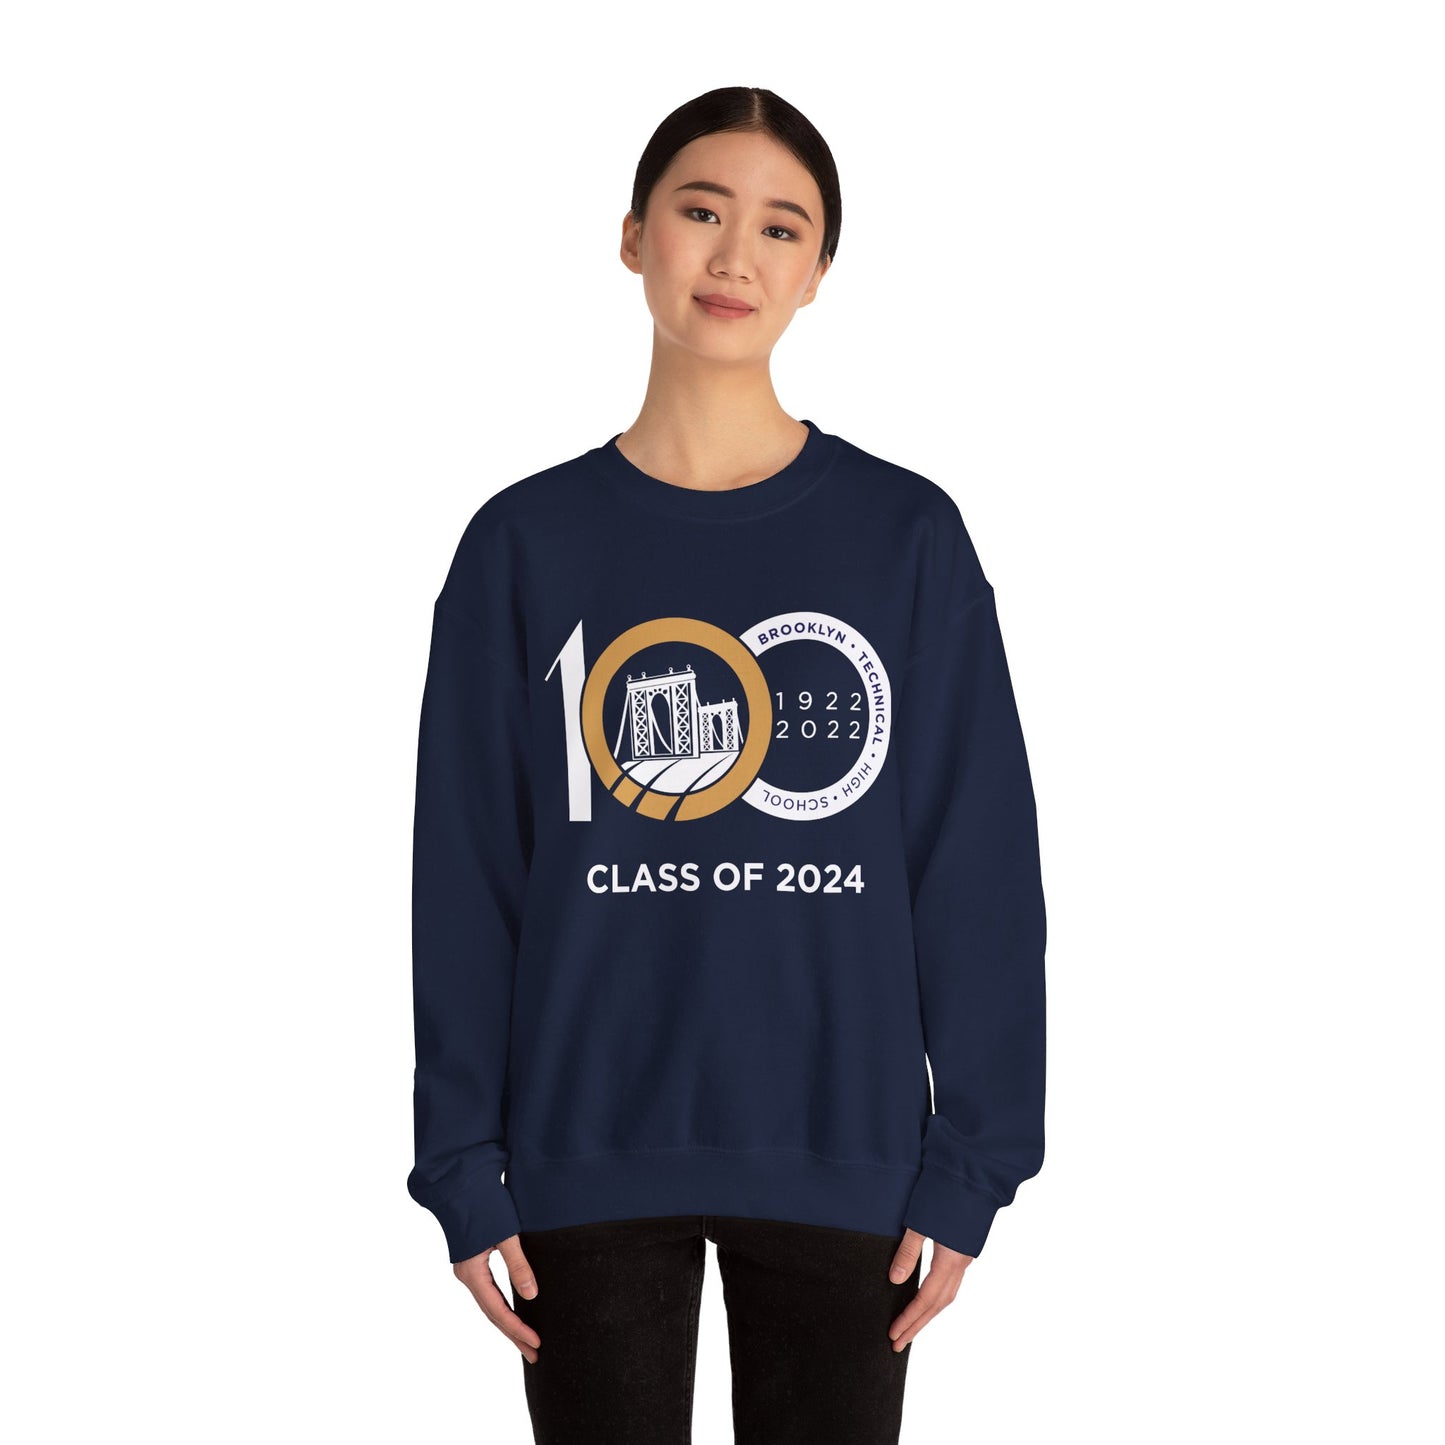 Centennial - Men's Heavy Blend Crewneck Sweatshirt - Class Of 2024